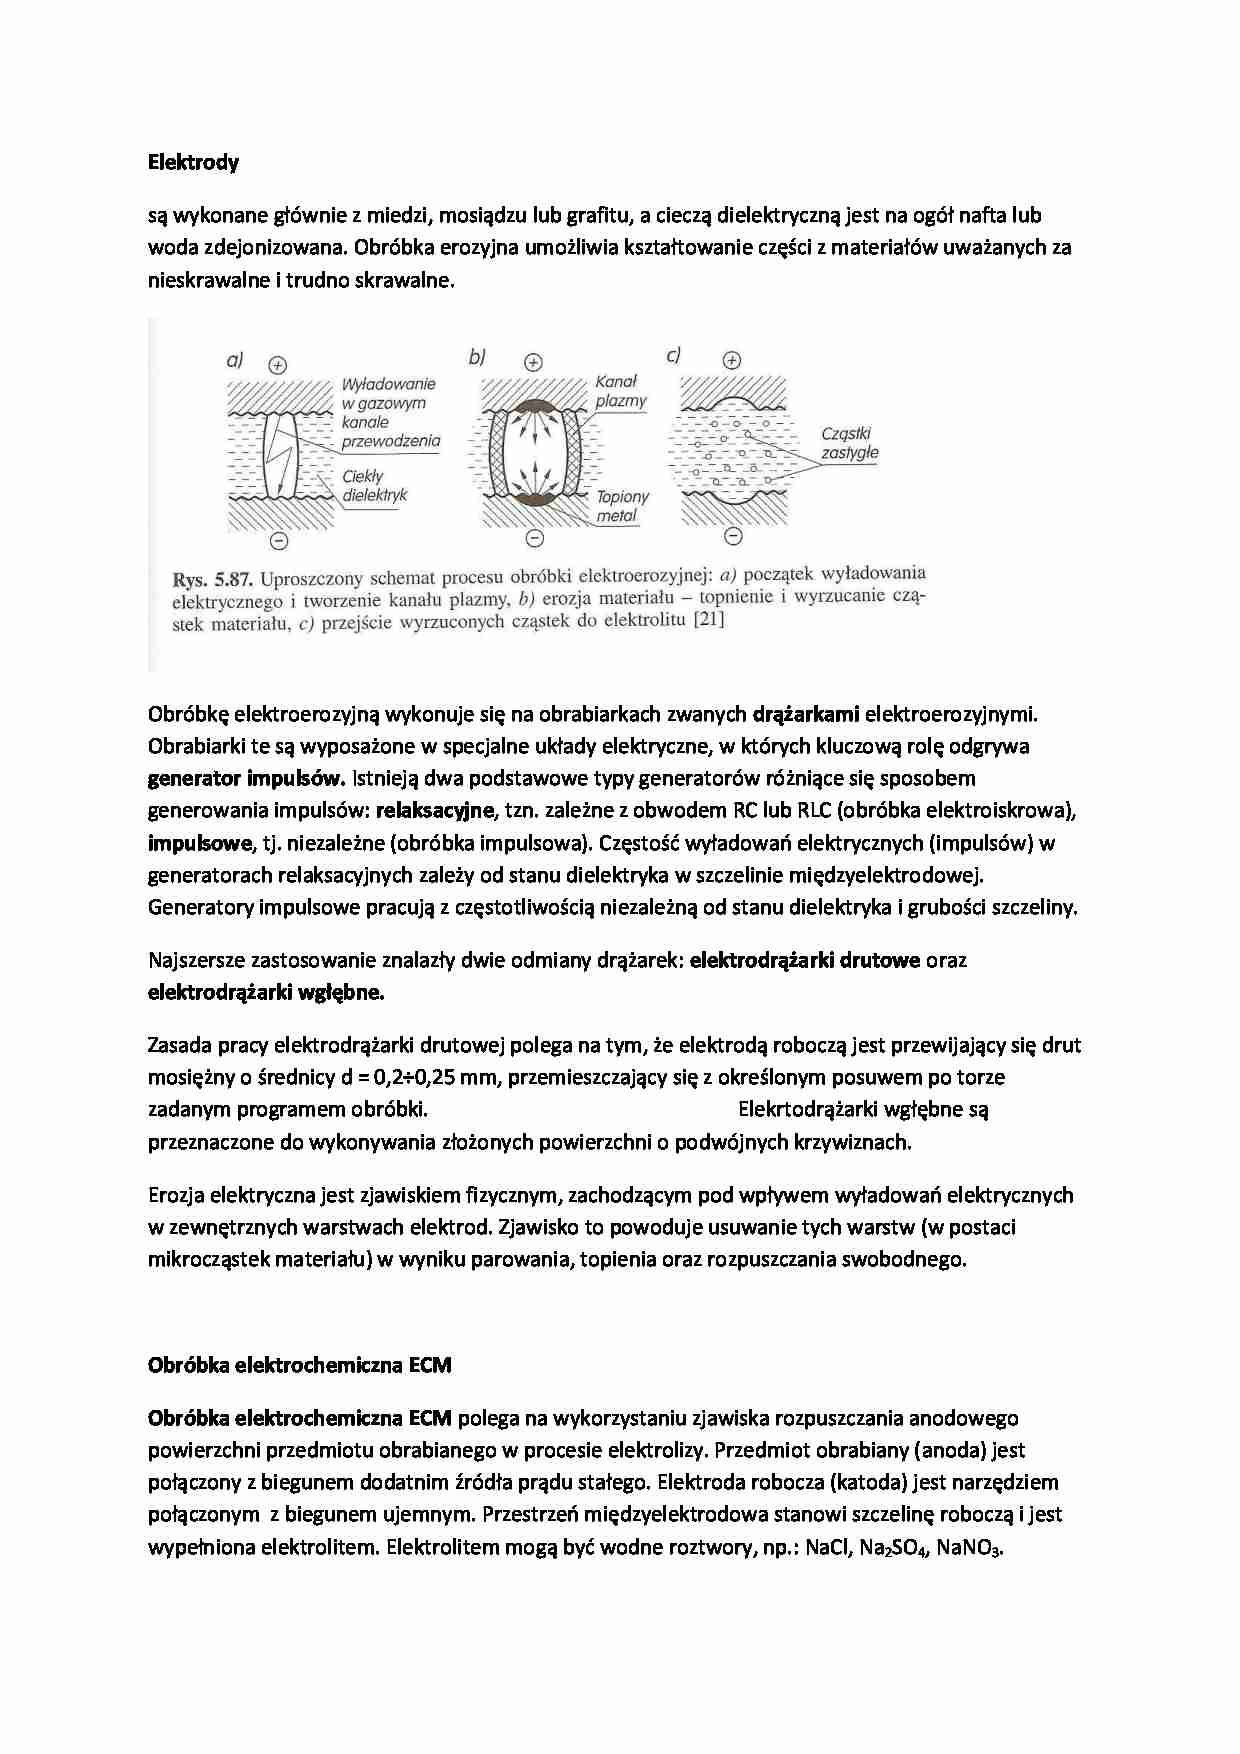 Elektrody oraz obróbka elektrochemiczna ECM-opracowanie - strona 1